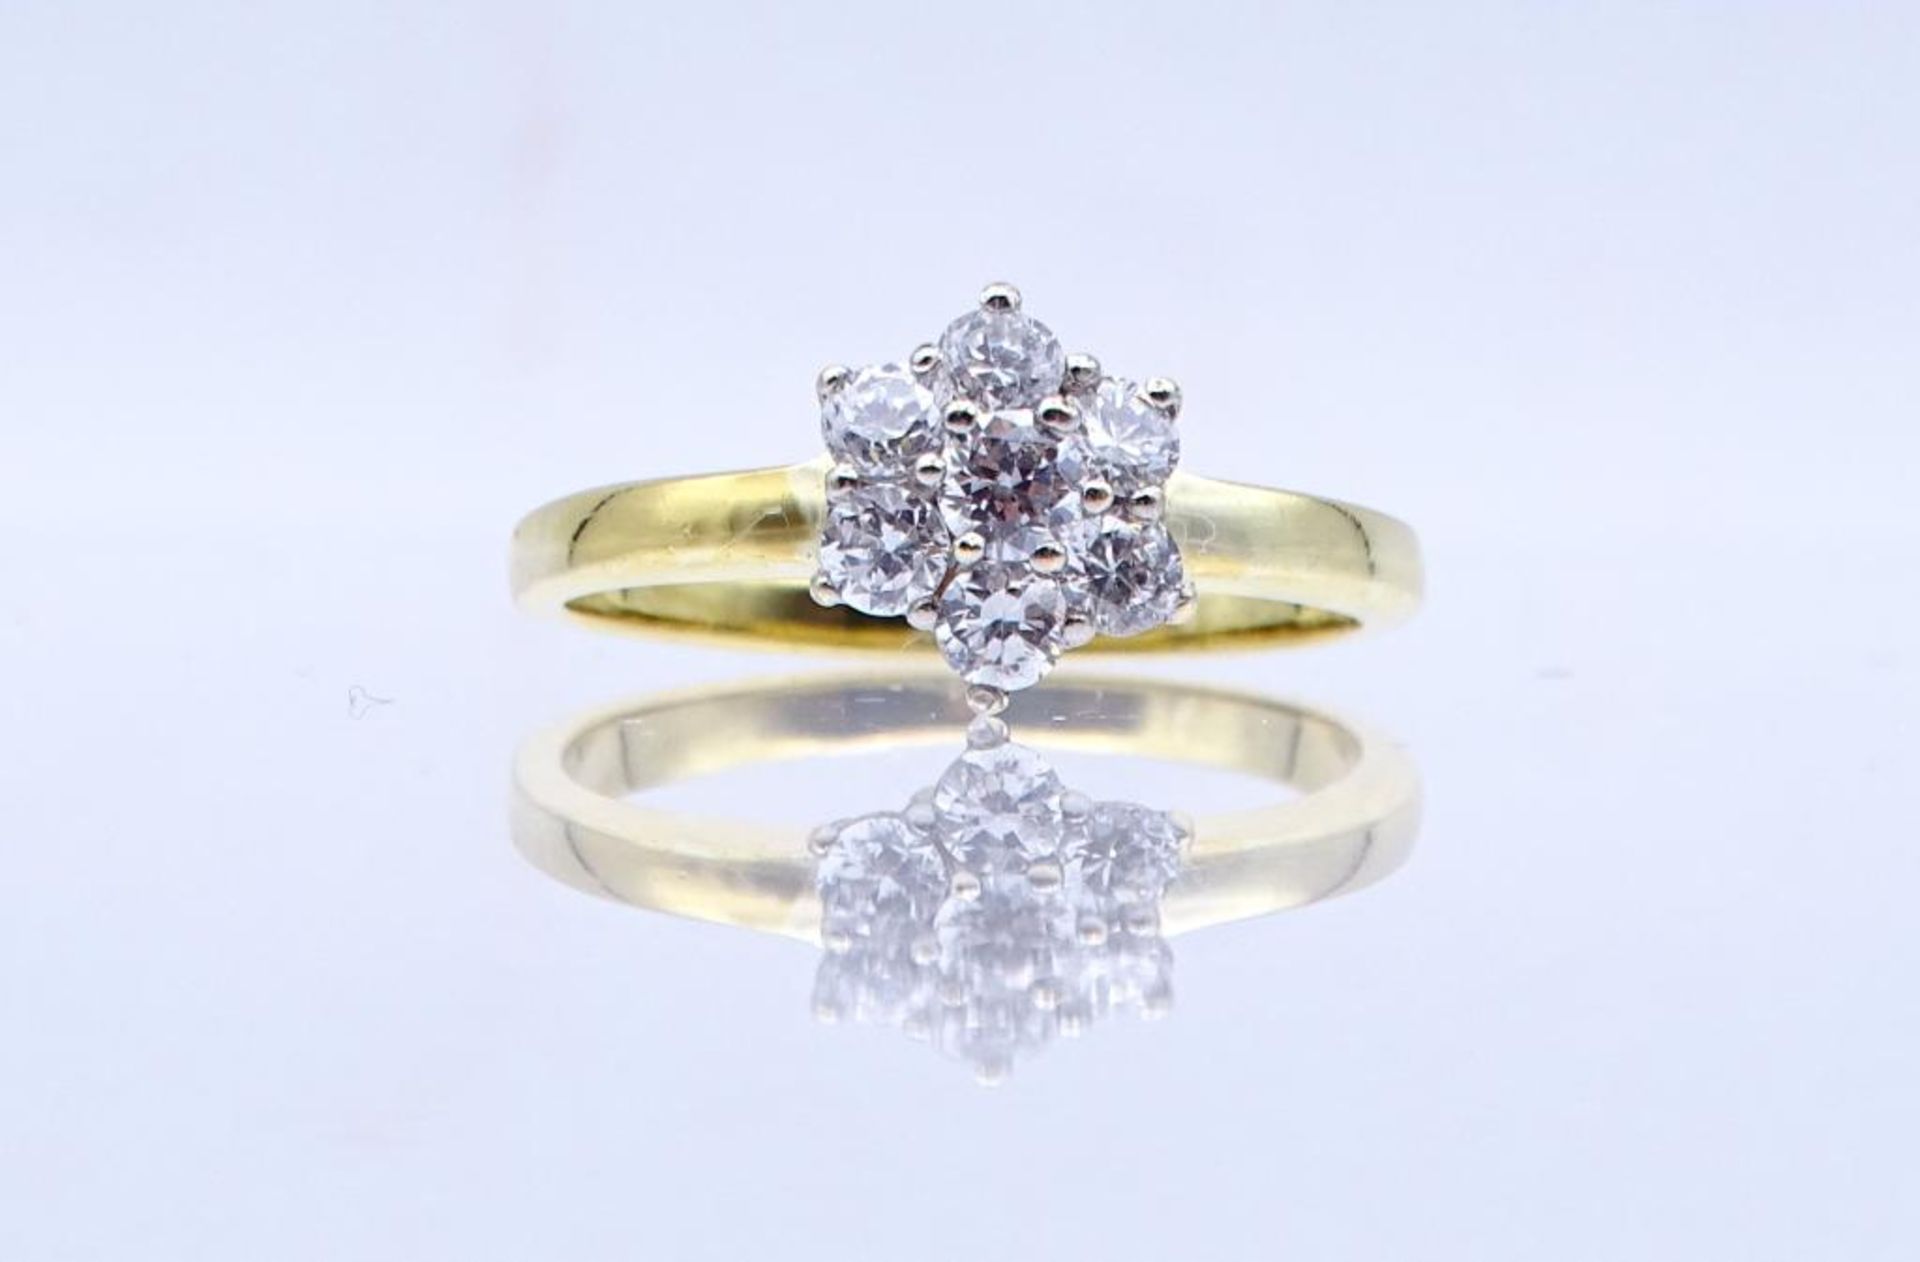 Zirkonia-Silber-Ring,vergoldet,Silber 925/000, 3,20gr., RG 60- - -22.61 % buyer's premium on the